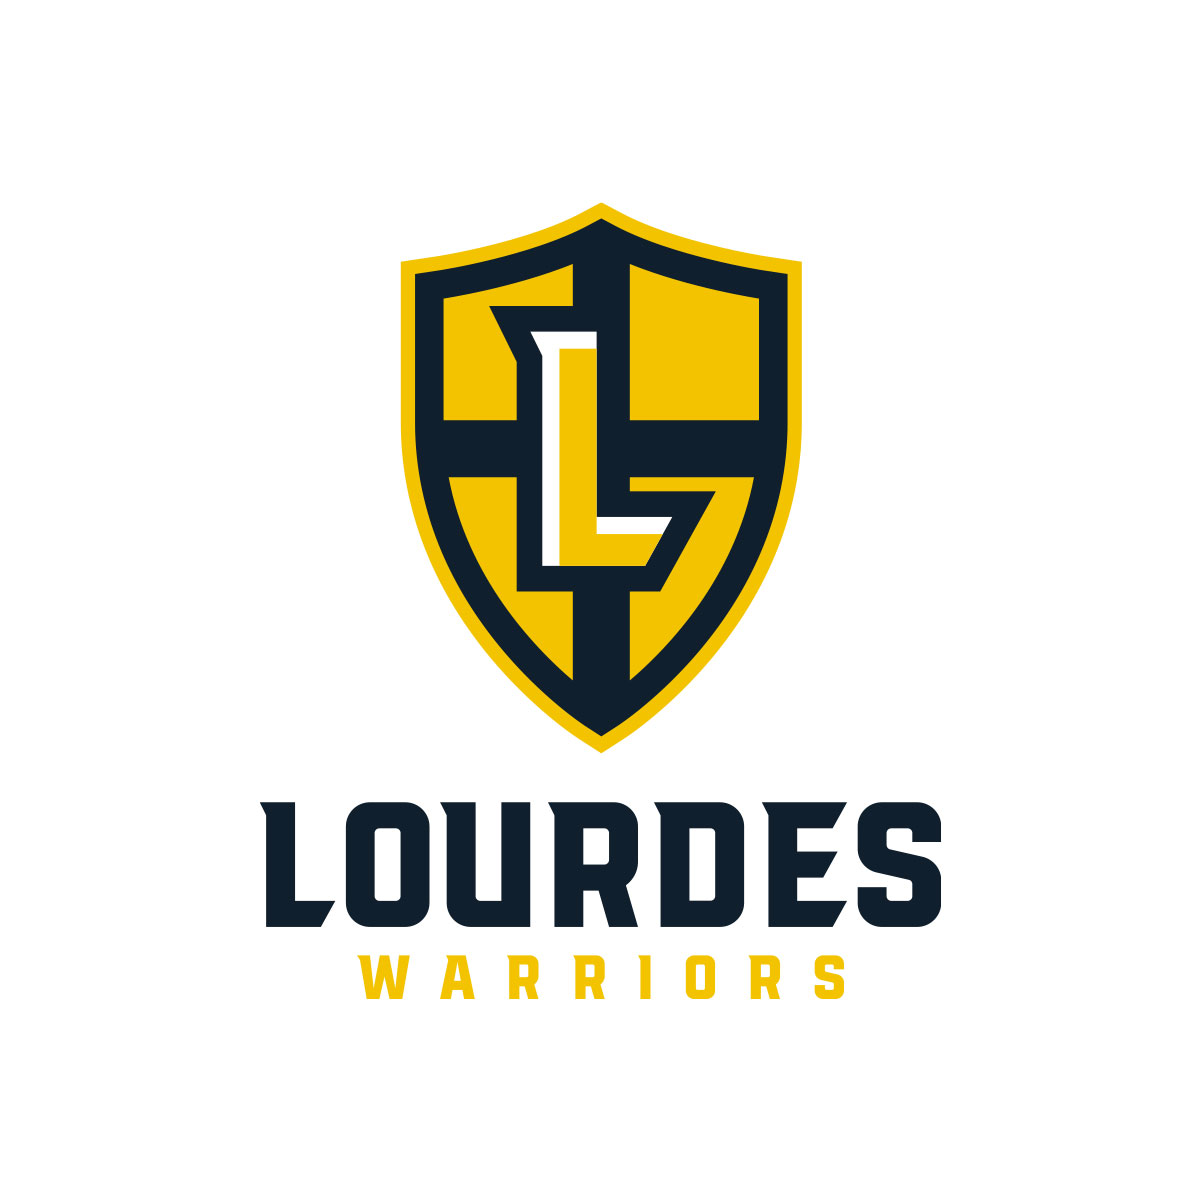 WD24_Logos_lourdes